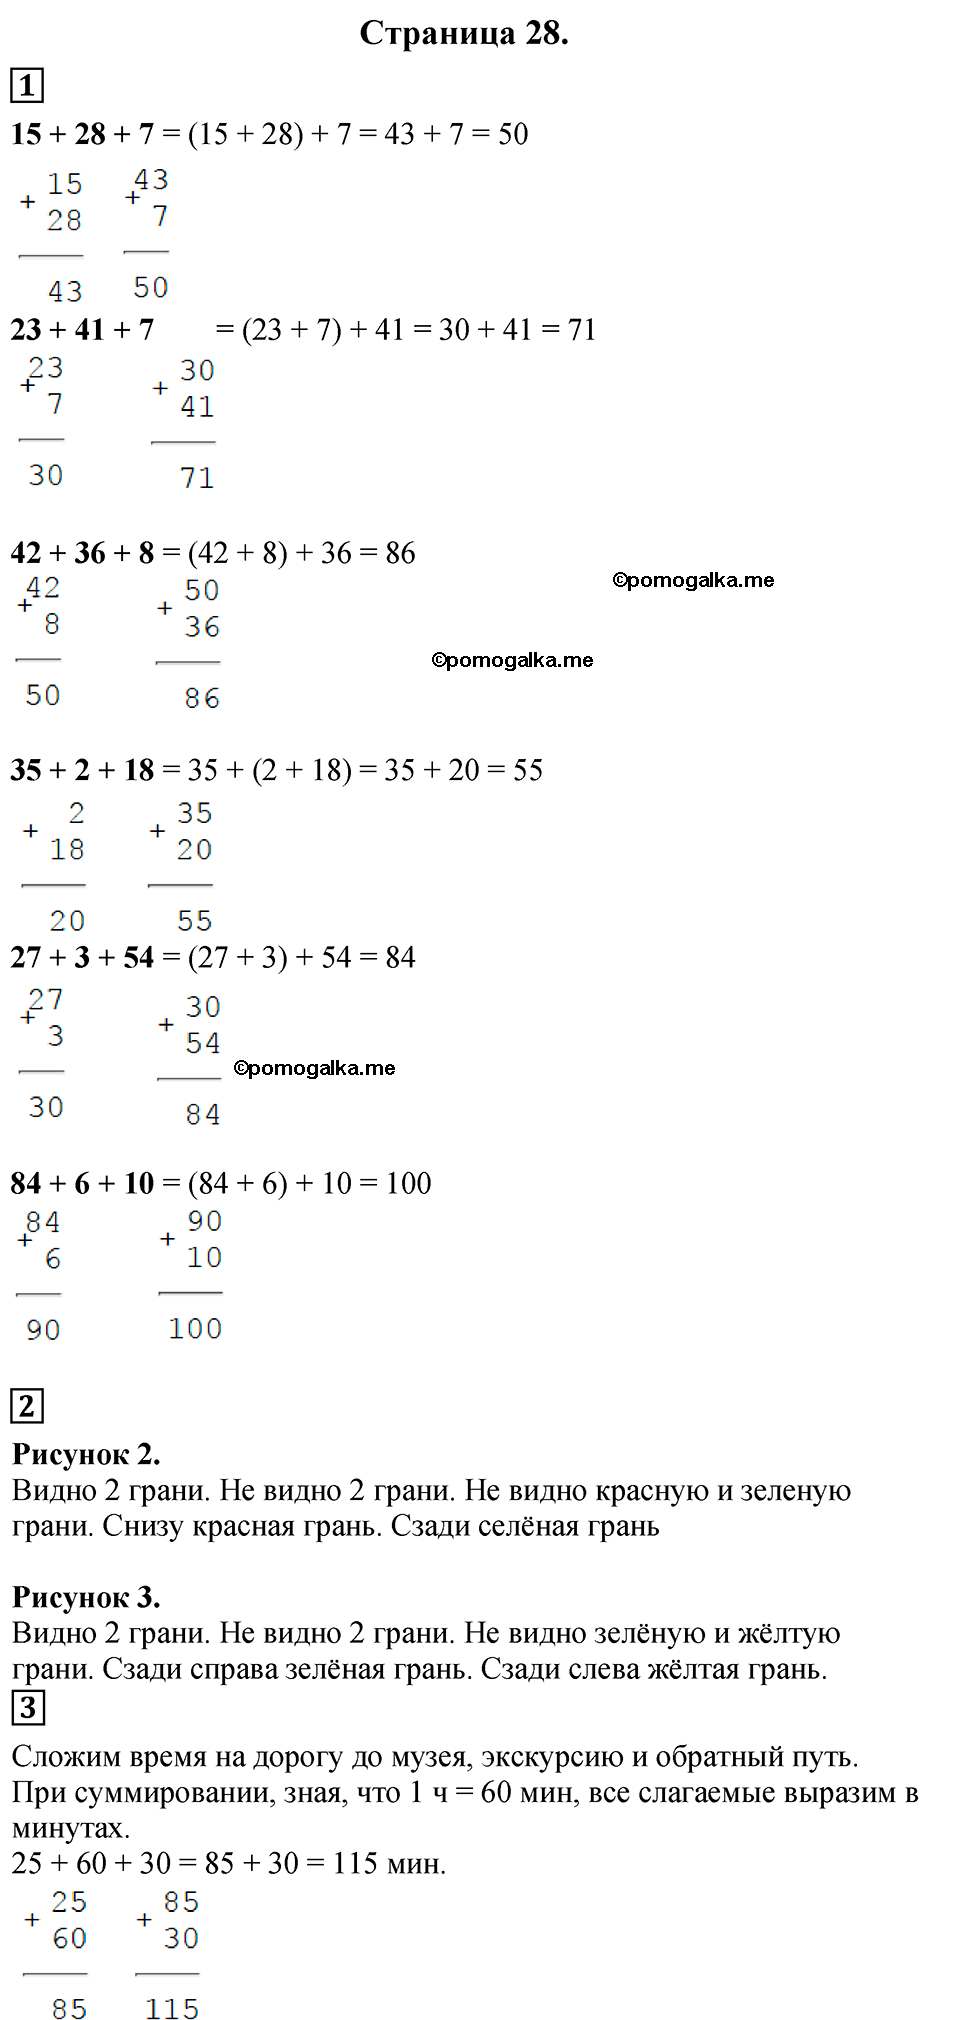 Страница №28 Часть 1 математика 3 класс Дорофеев